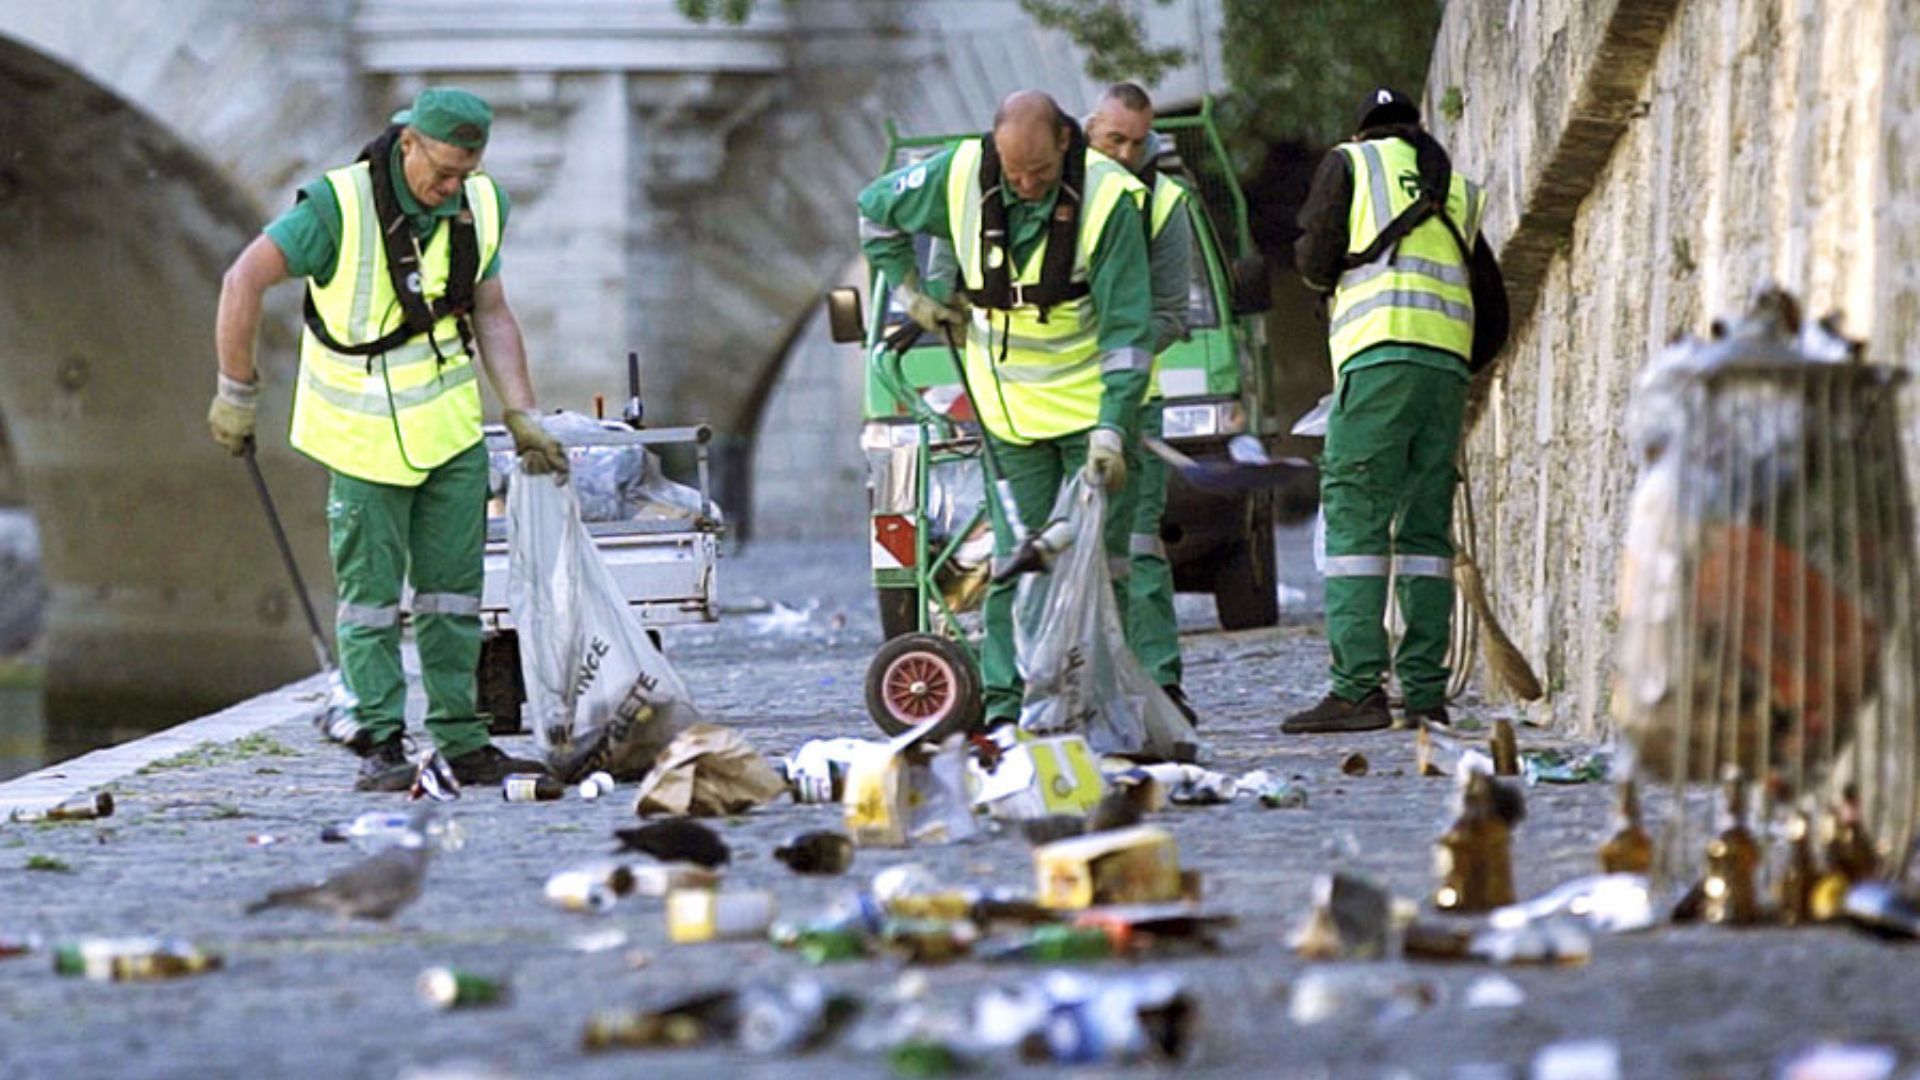 Le documentaire "Des ordures et des hommes" rend hommage aux éboueurs de la fonctionnelle, brigade spéciale d'éboueurs de la Ville de Paris. // PHOTO : "Des ordures et des hommes"